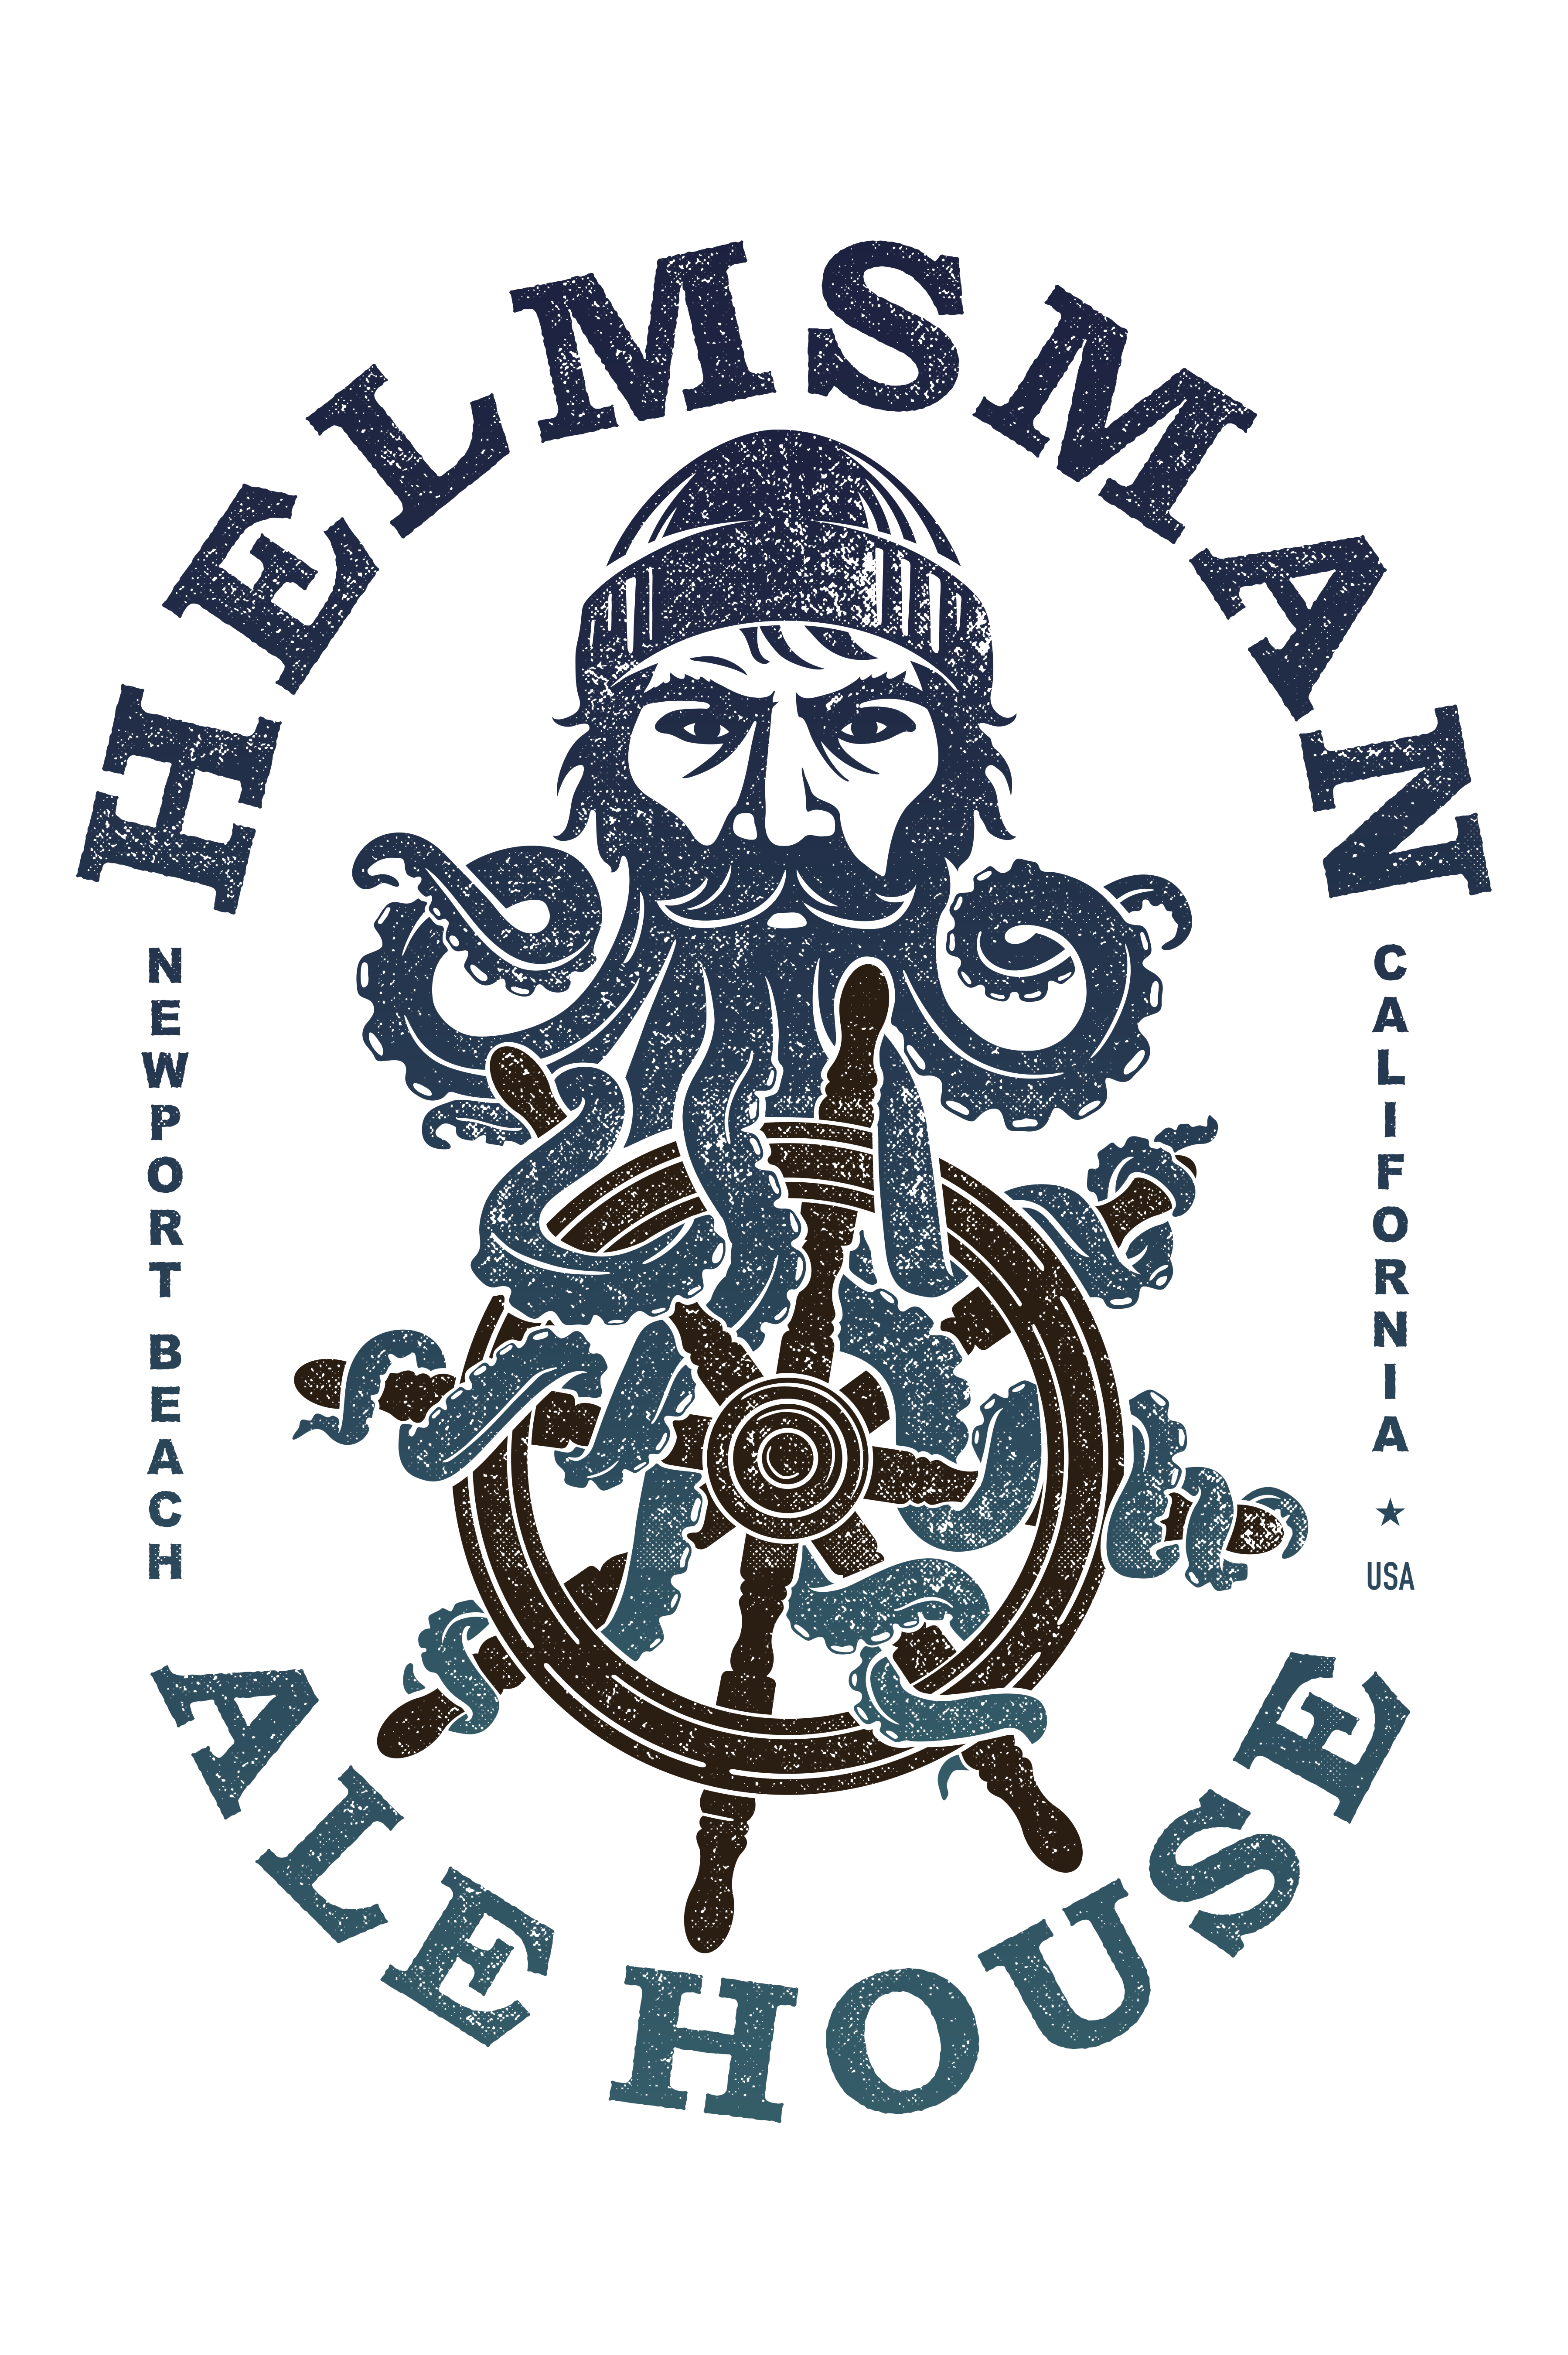 Helmsman Ale House Hoedown!